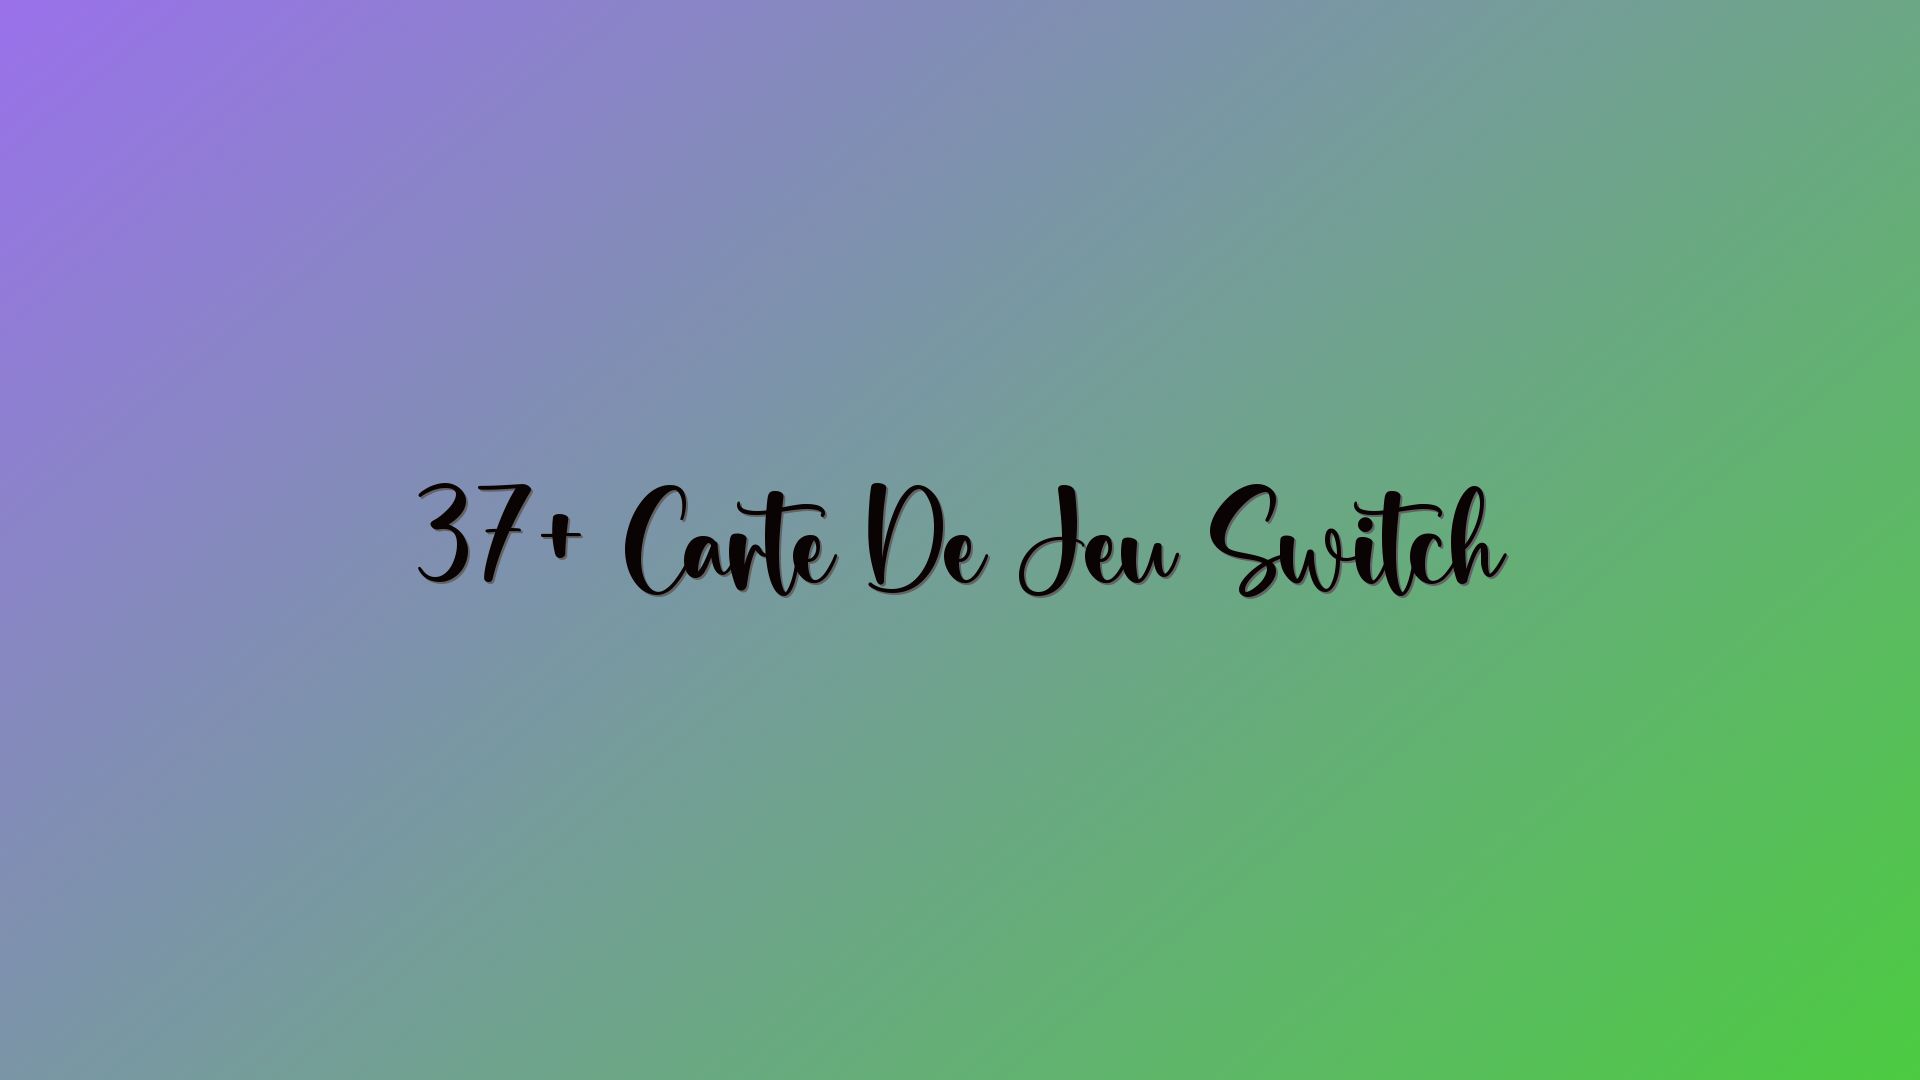 37+ Carte De Jeu Switch